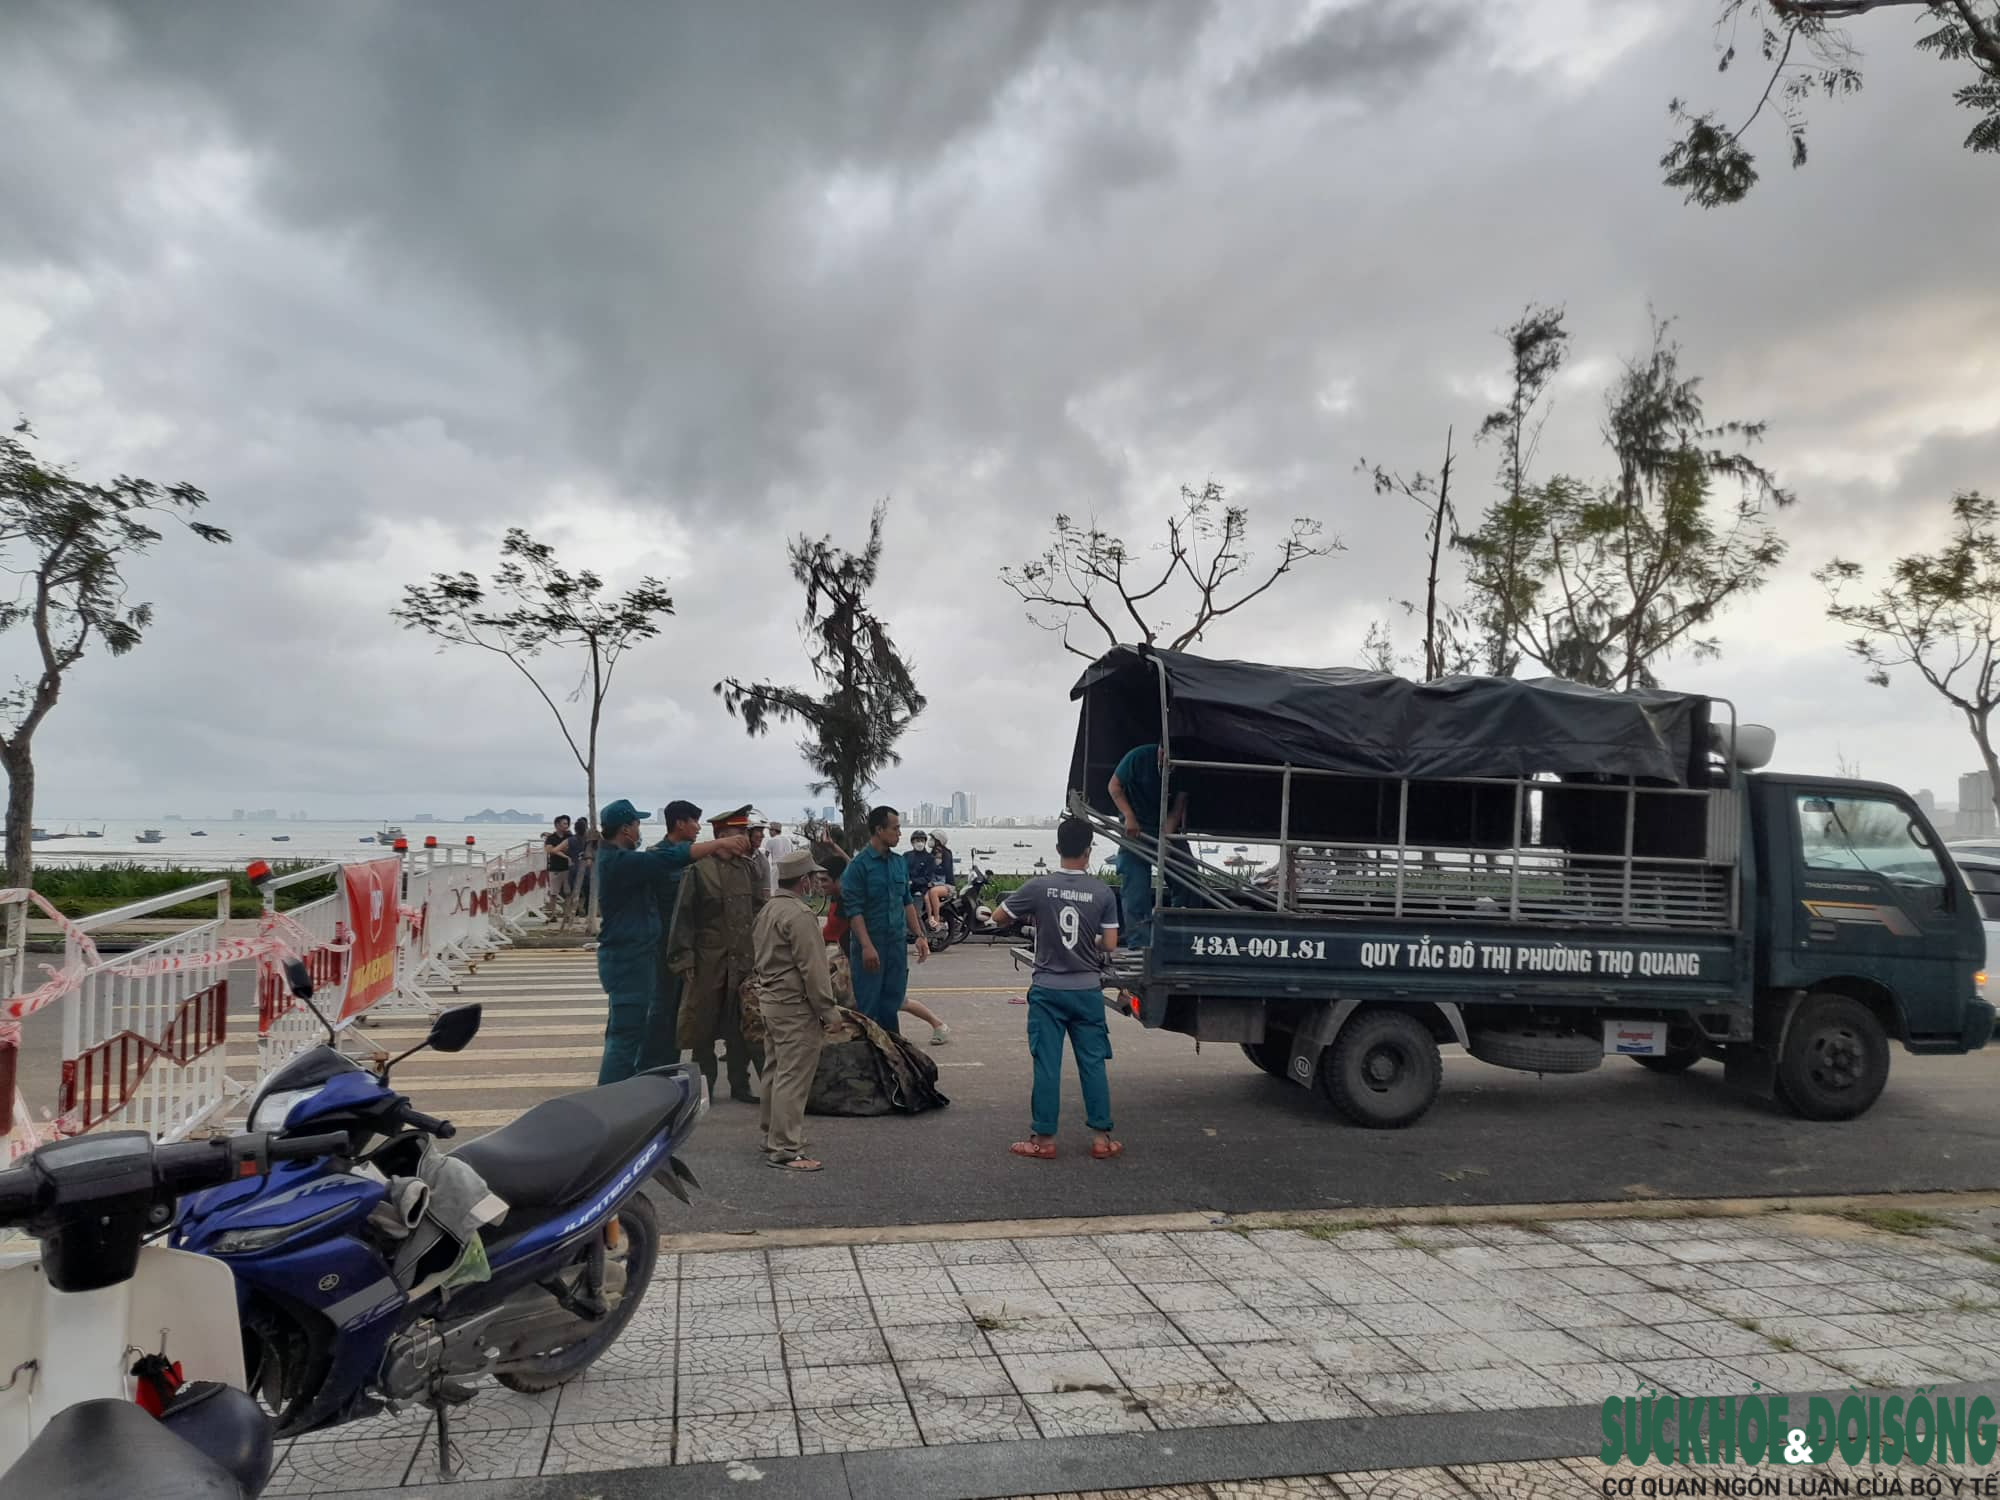  Tại ngã ba đường Hoàng Sa - Trần Nguyên Hãn (phường Thọ Quang, quận Sơn Trà), lực lượng chức năng đã tiến hành dựng chốt để ngăn người dân, du khách vào khu vực nguy hiểm.